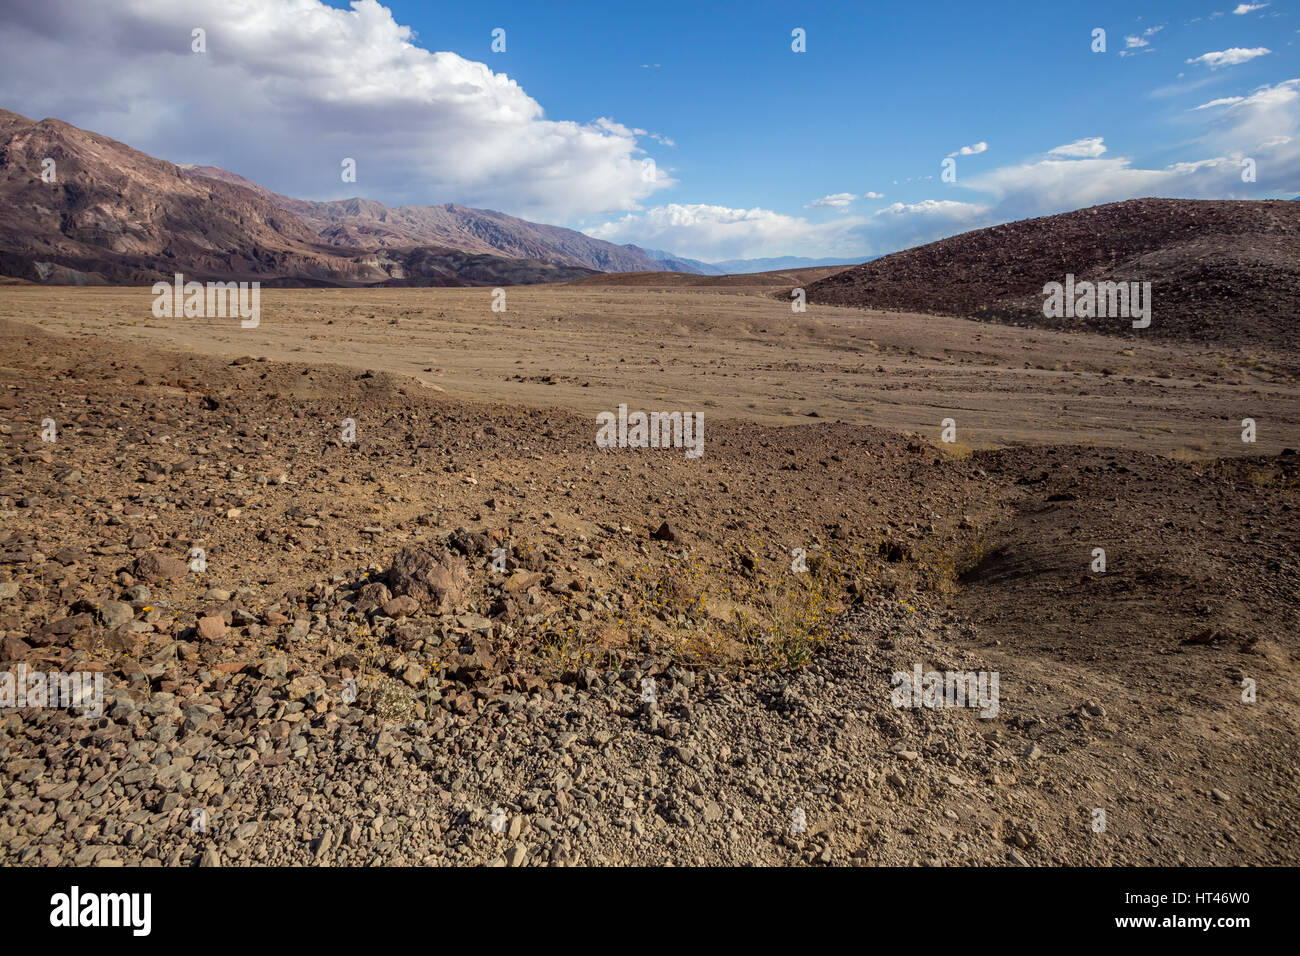 Montagne Noire, route panoramique, l'artiste, Death Valley National Park, Death Valley, California, United States, Amérique du Nord Banque D'Images